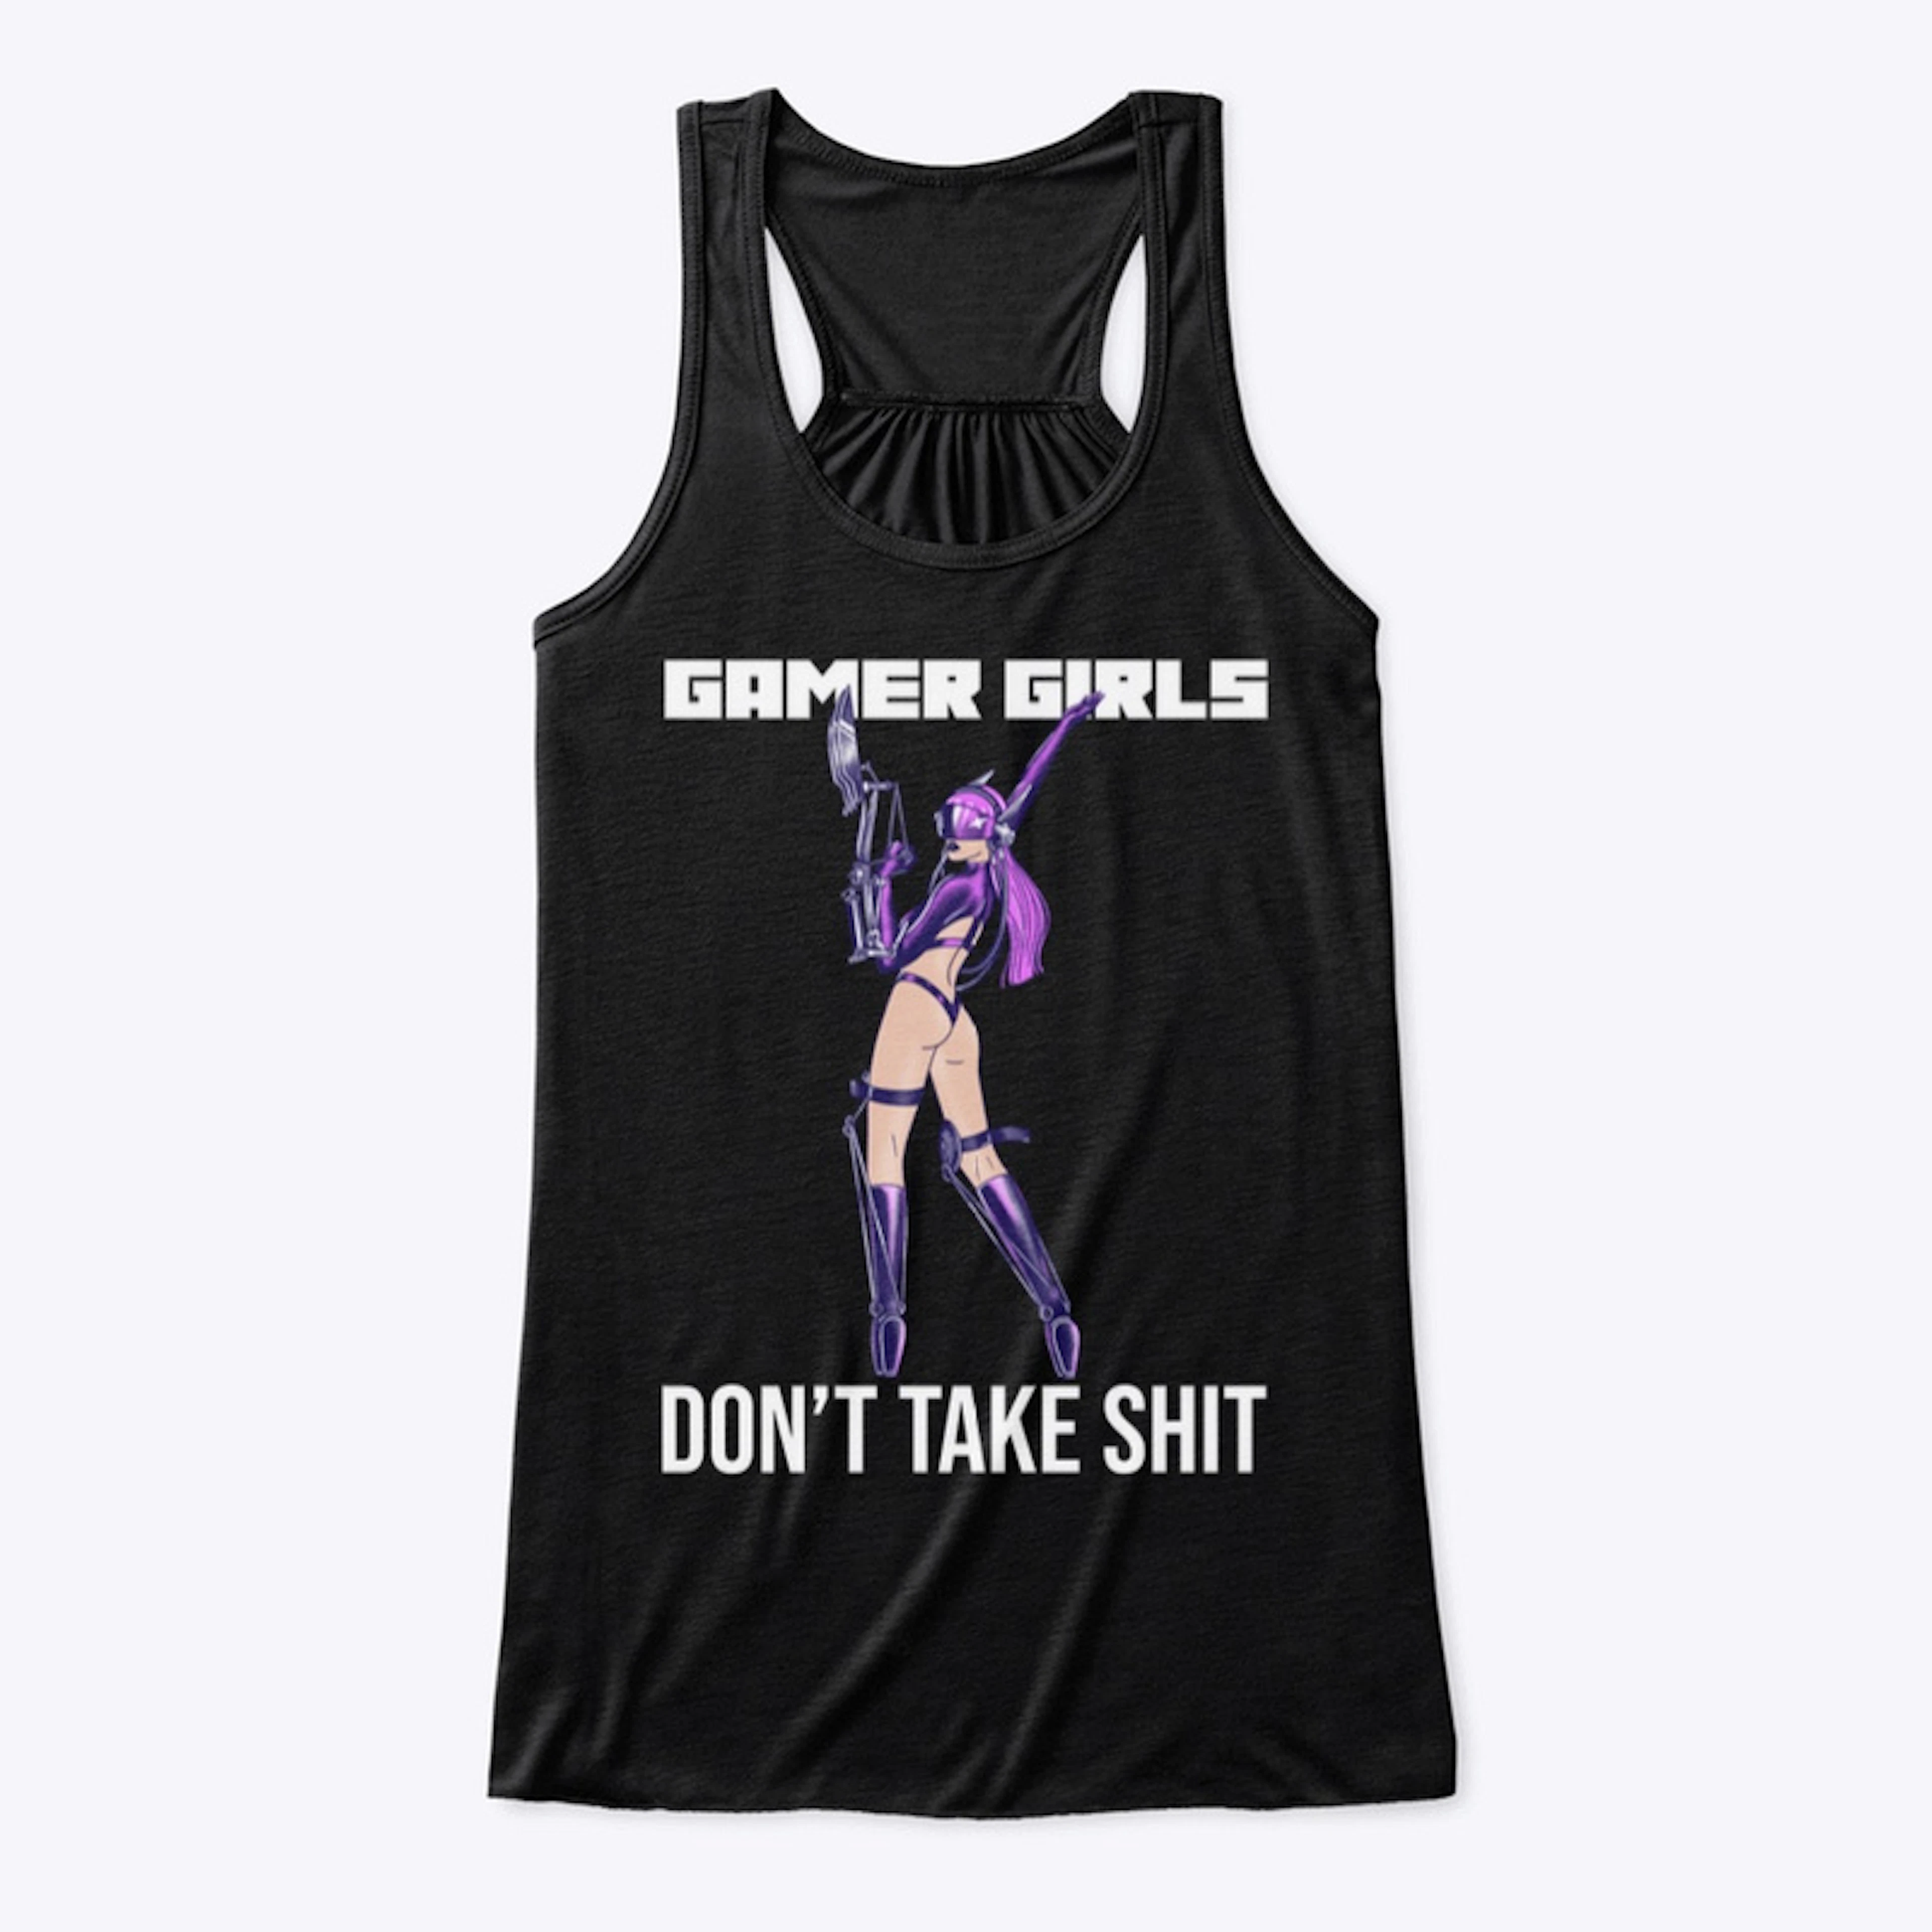 “Gamer Girls Don’t Take Shit” Gamer Gear